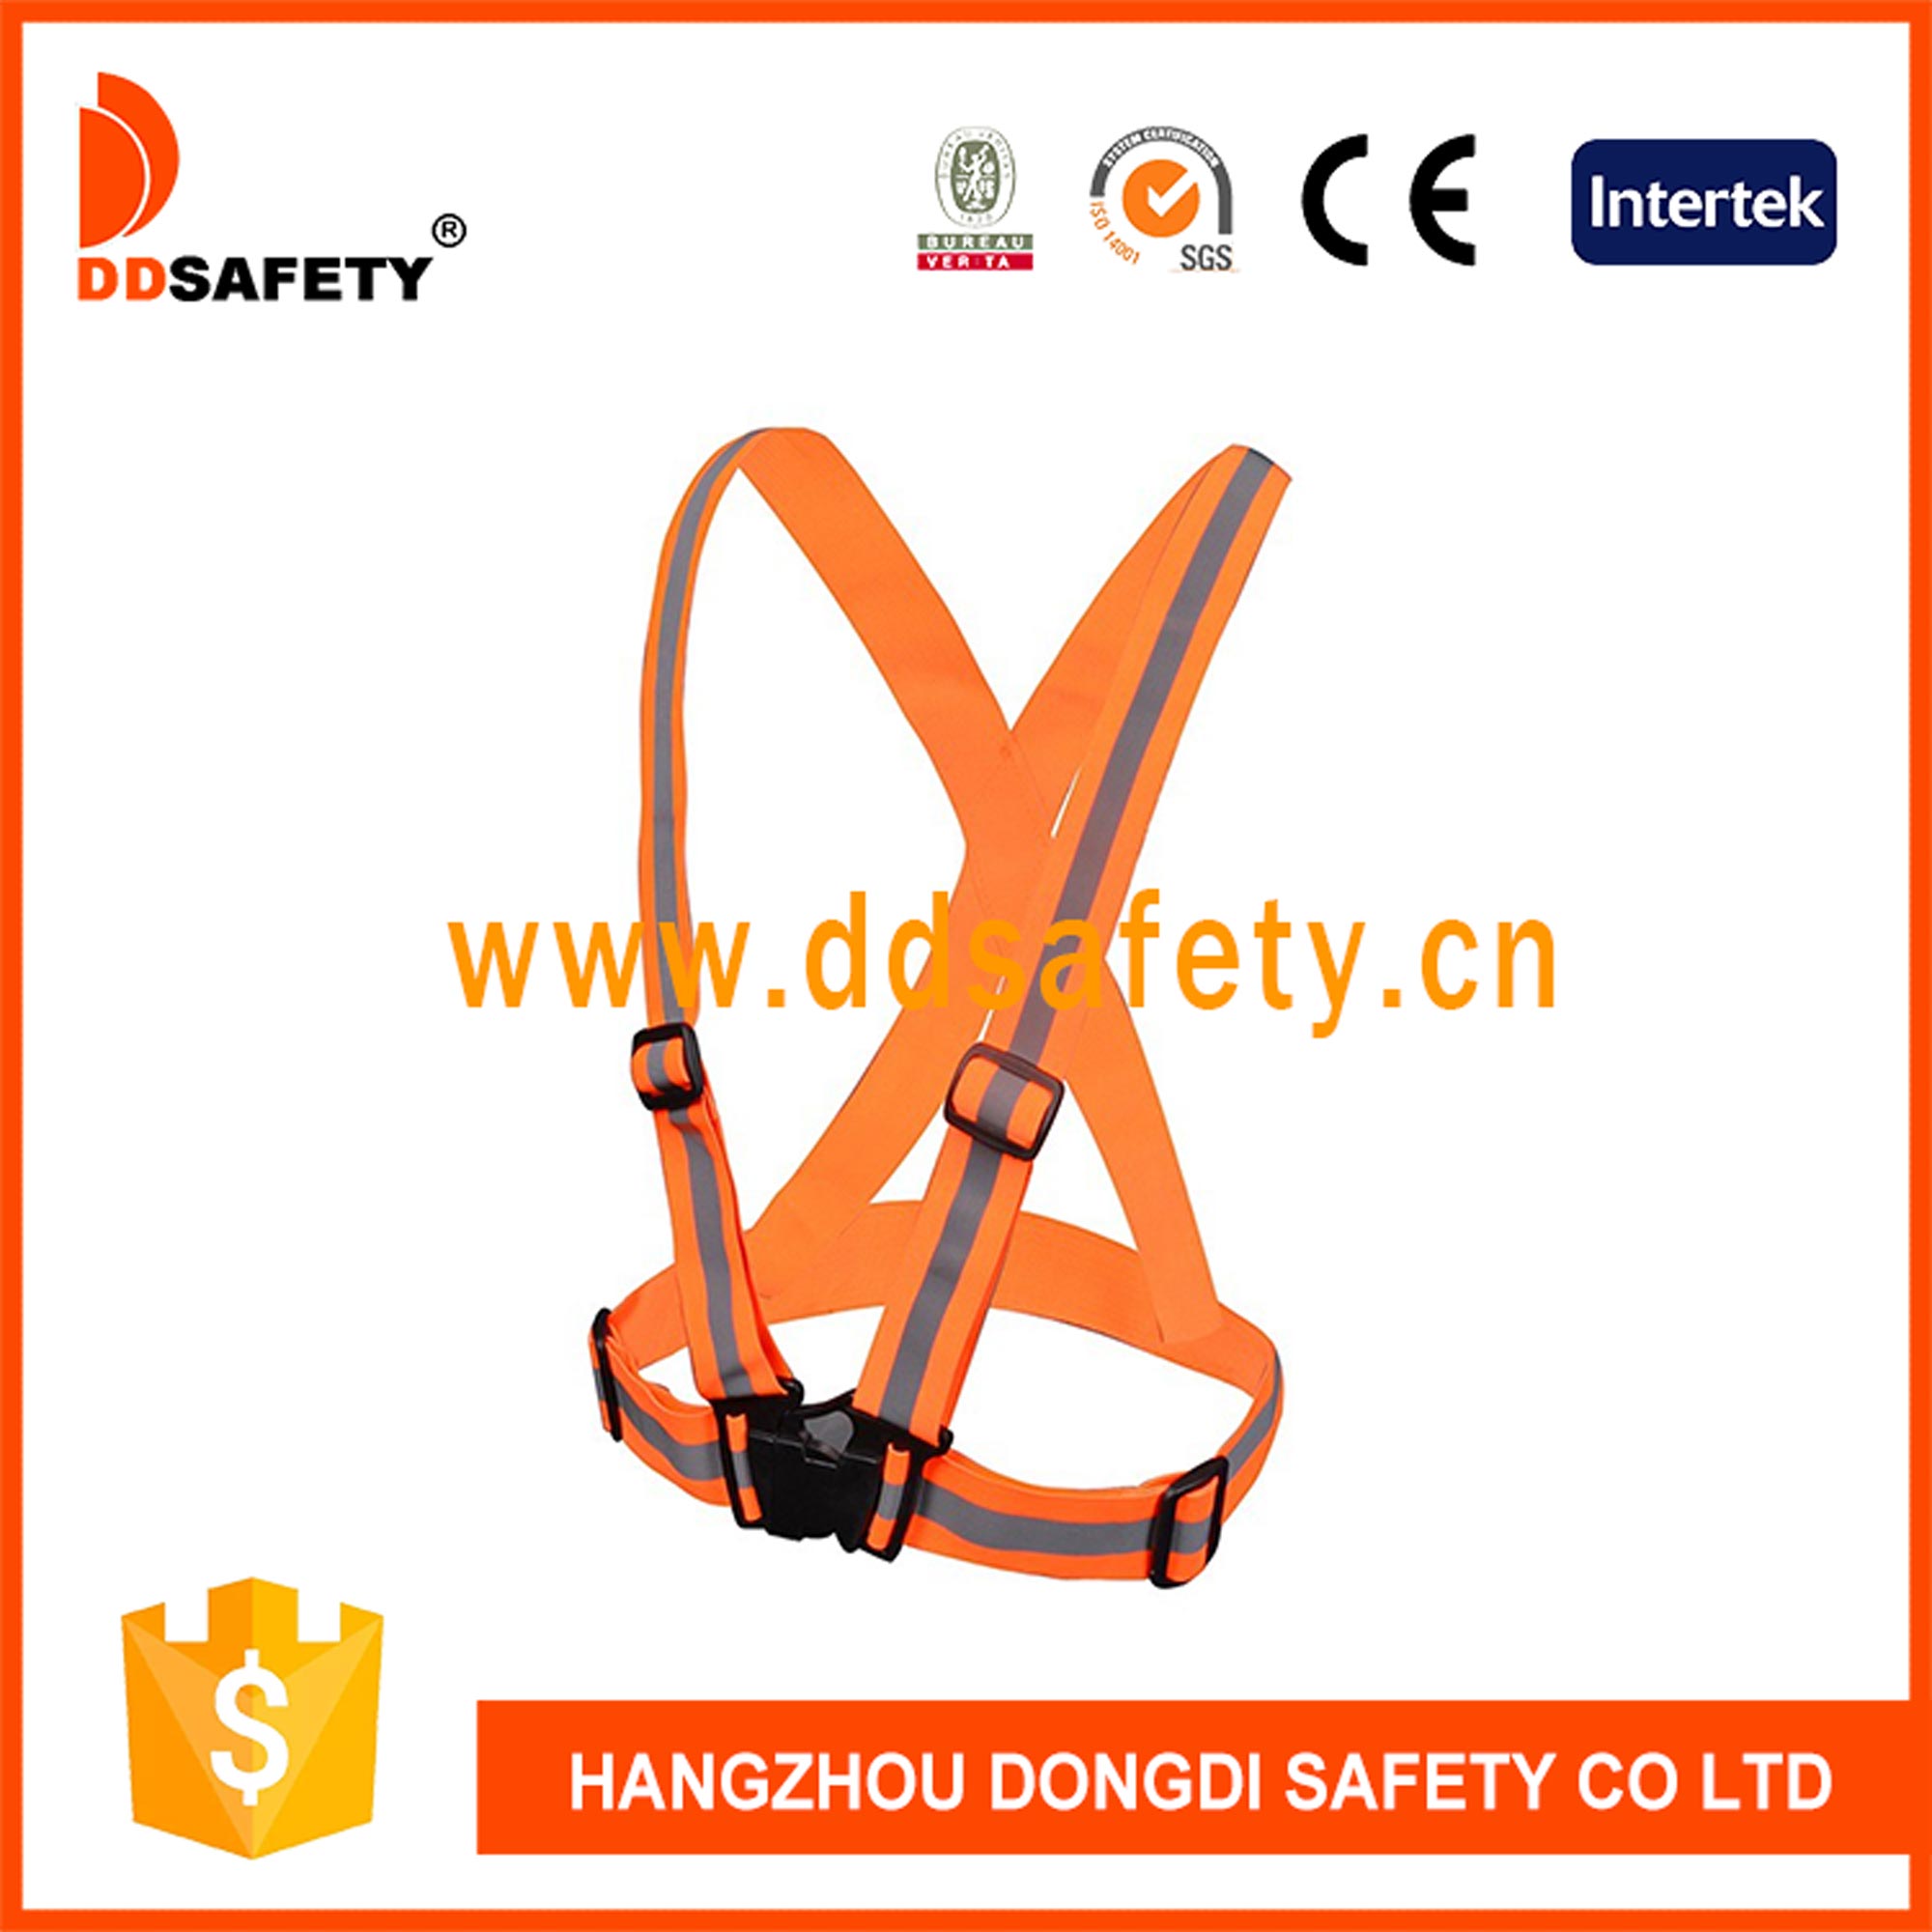 Оранжевый эластичный ремень безопасности повышенной видимости со светоотражающими элементами.